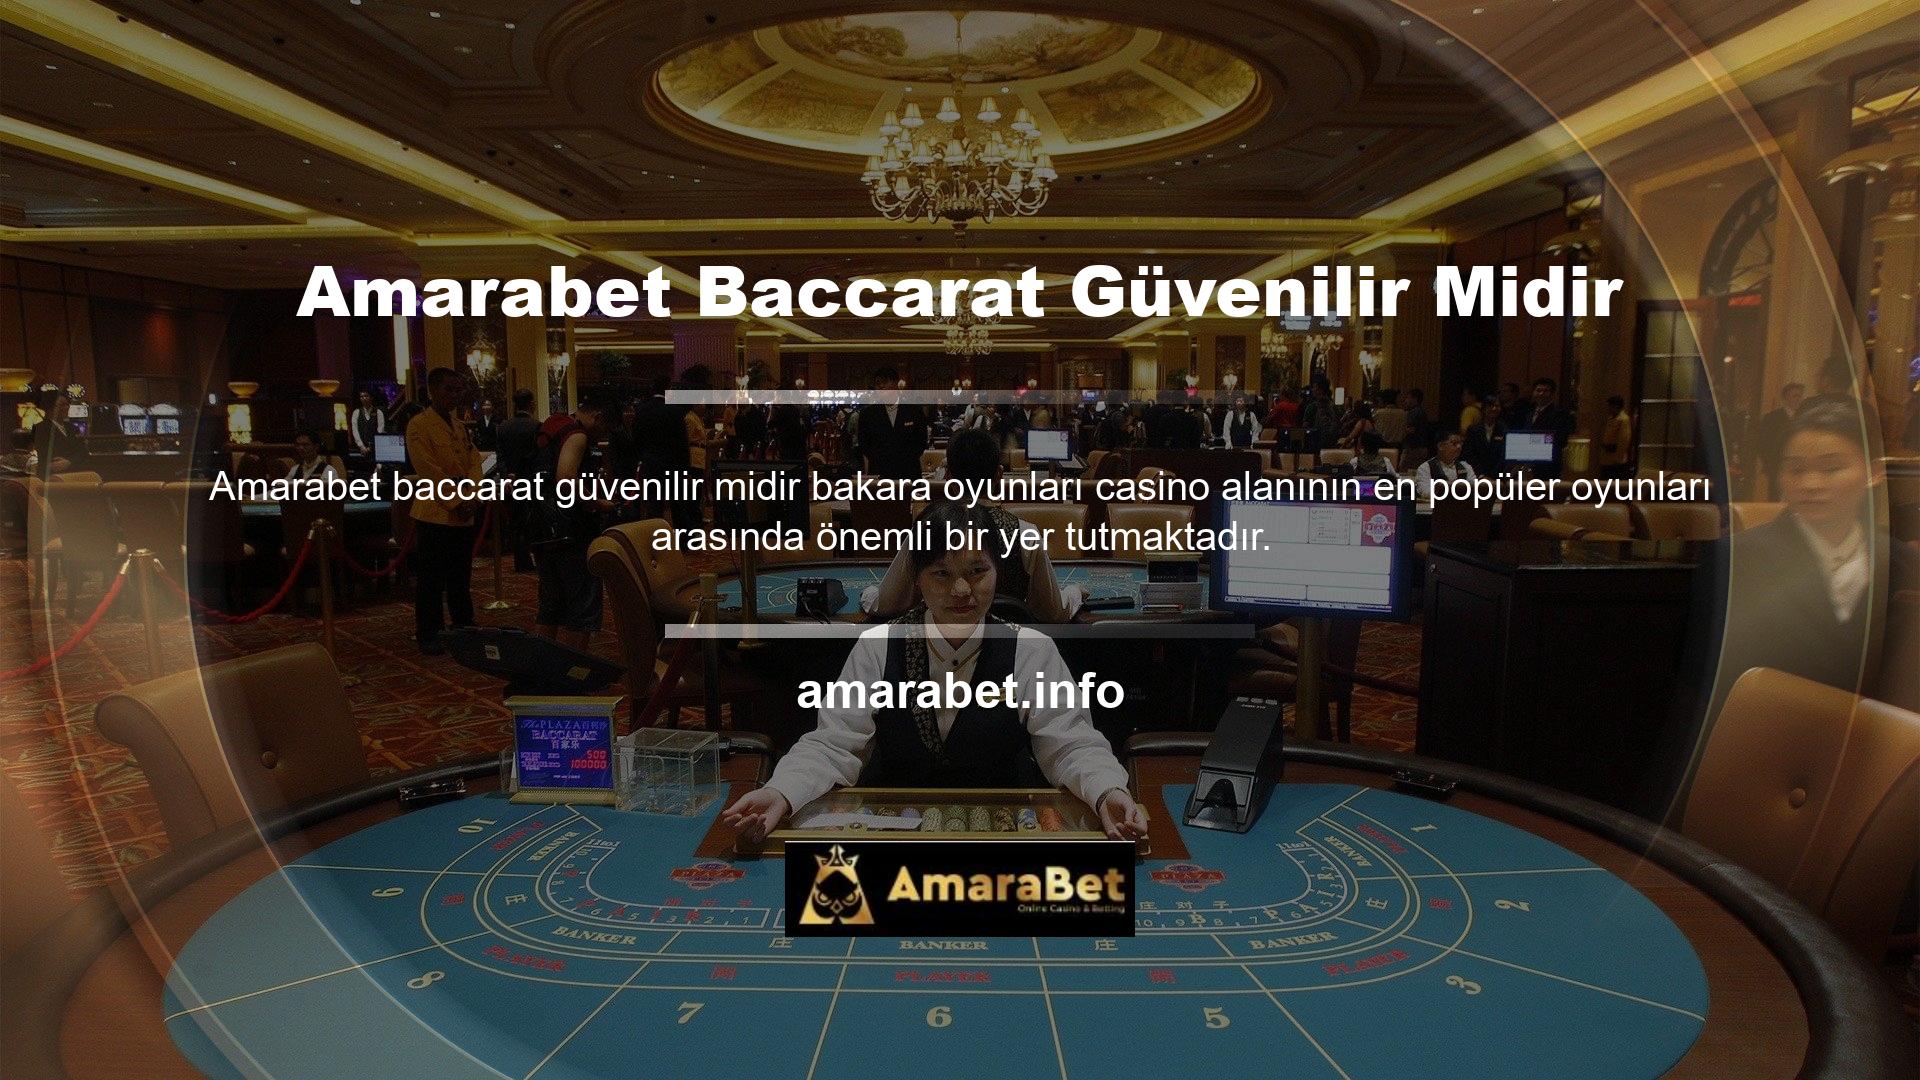 Peki Amarabet bakara oyunlarına güvenilebilir mi? Amarabet web sitesi, müşterilerinin oynadığı tüm oyunların orijinalliğine odaklanan bir web sitesidir